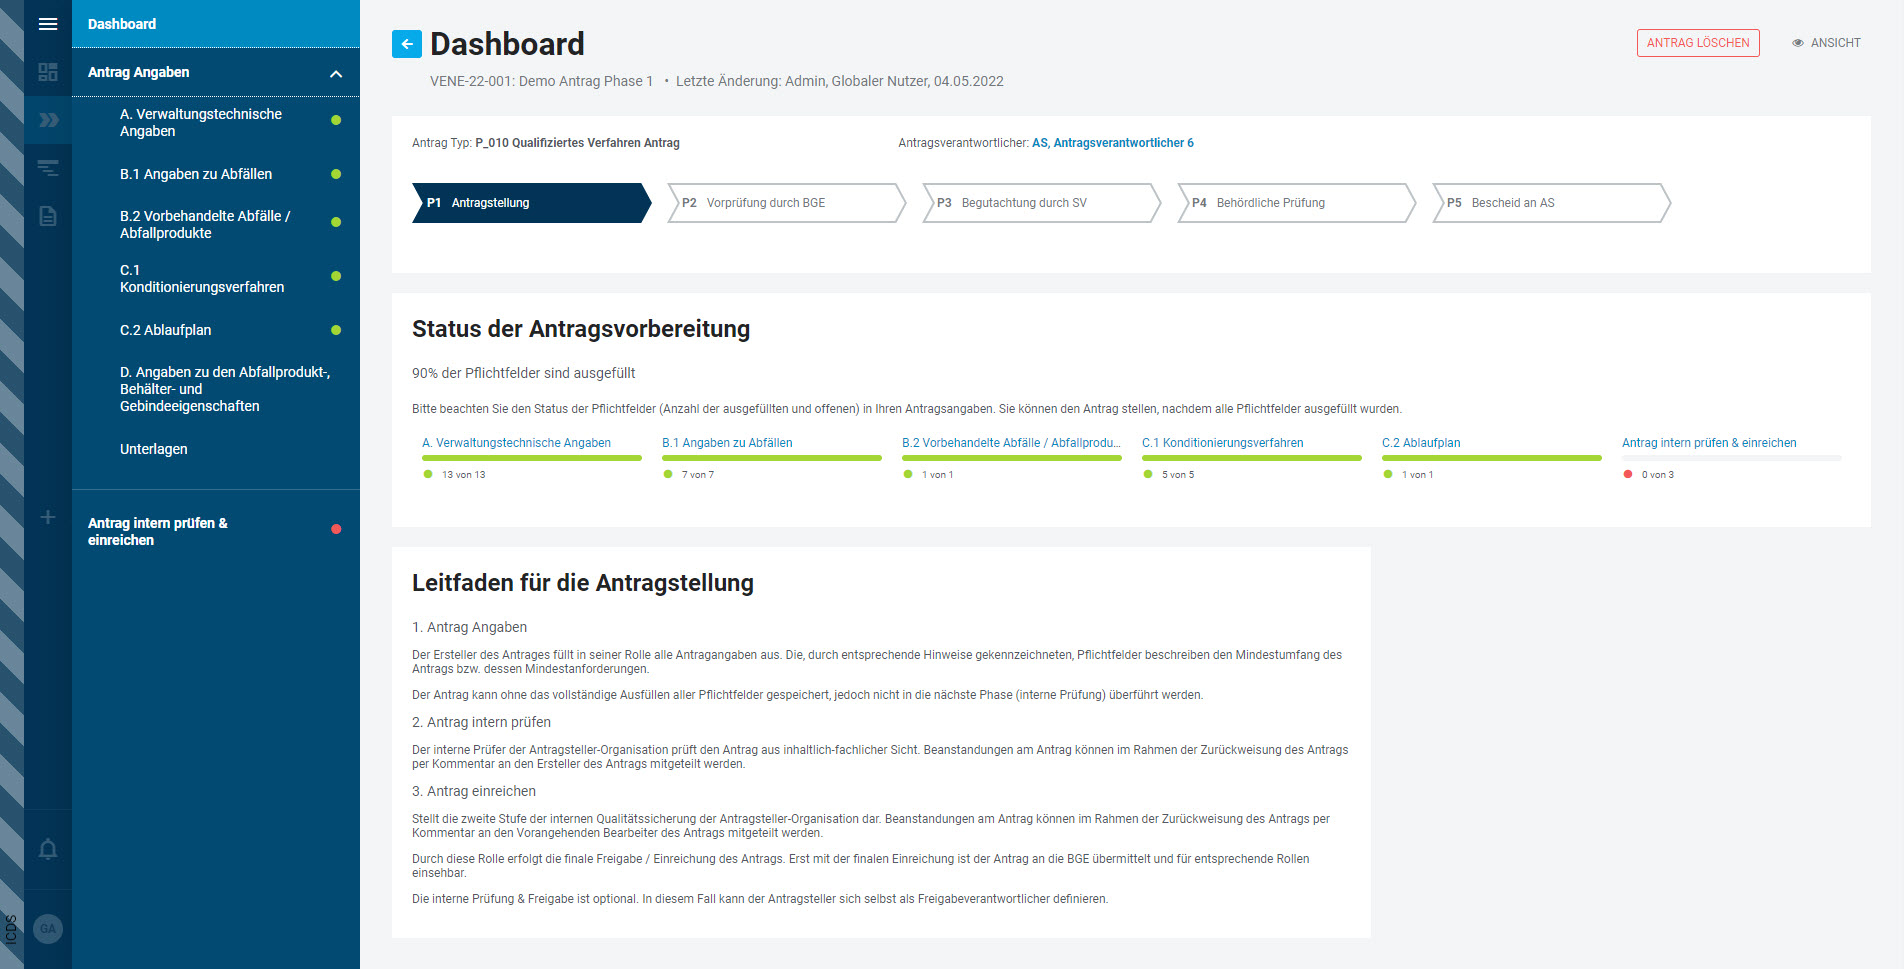 NWL Plattform - Antrag auf Qualifiziertes Verfahren - Dashboard